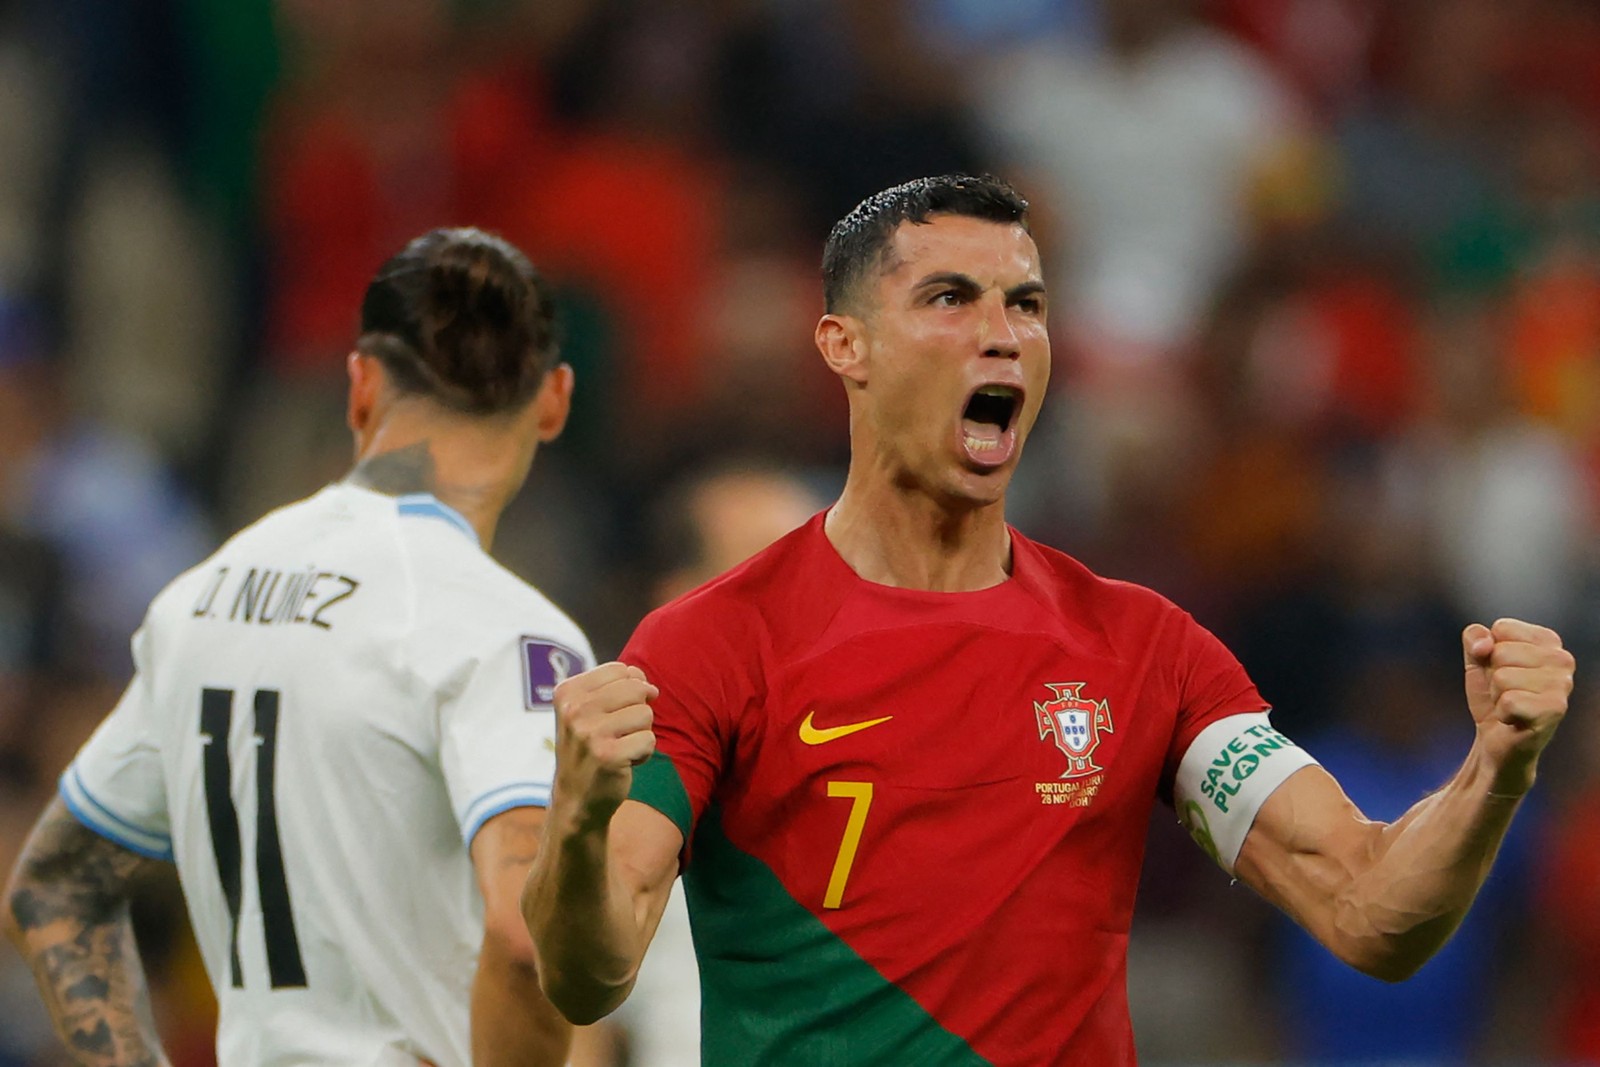 Cristiano Ronaldo comemora depois de marcar o primeiro gol — Foto: Odd ANDERSEN / AFP